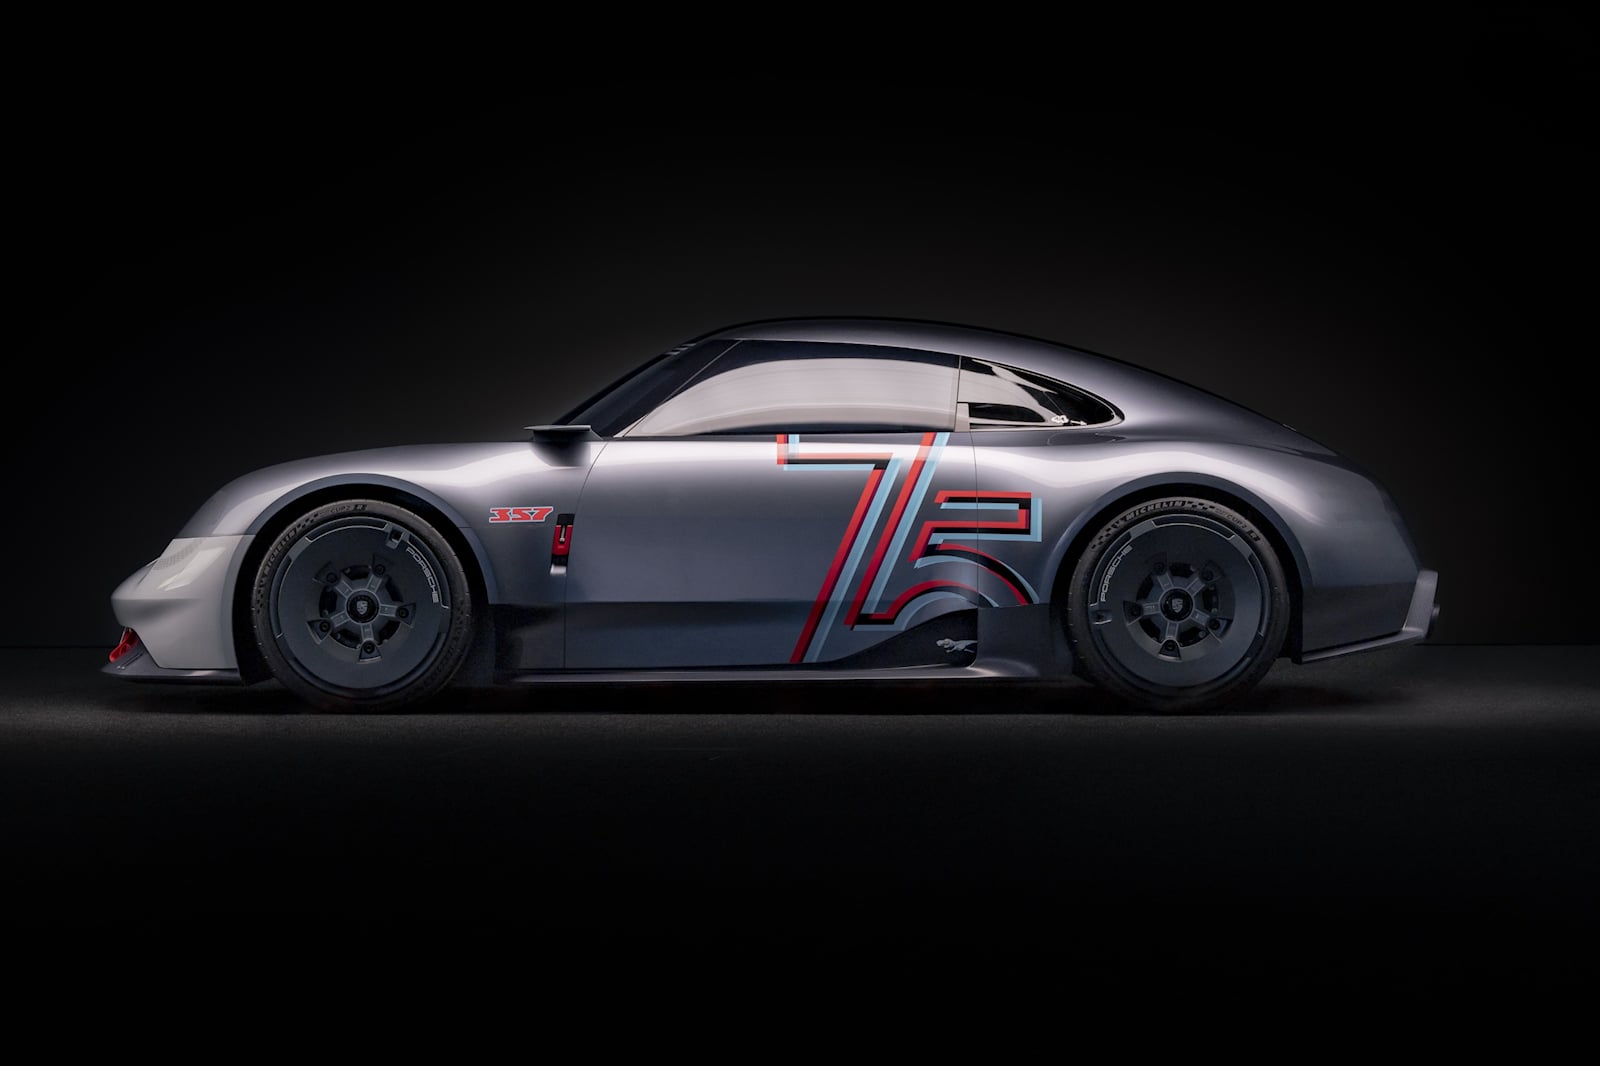 «Мы создали особенный подарок на день рождения в виде Porsche Vision 357, который использует модель 356 в качестве основы, чтобы подчеркнуть значимость нашей дизайнерской ДНК», — говорит Михаэль Мауэр, вице-президент Style Porsche. «Концепт-кар — это